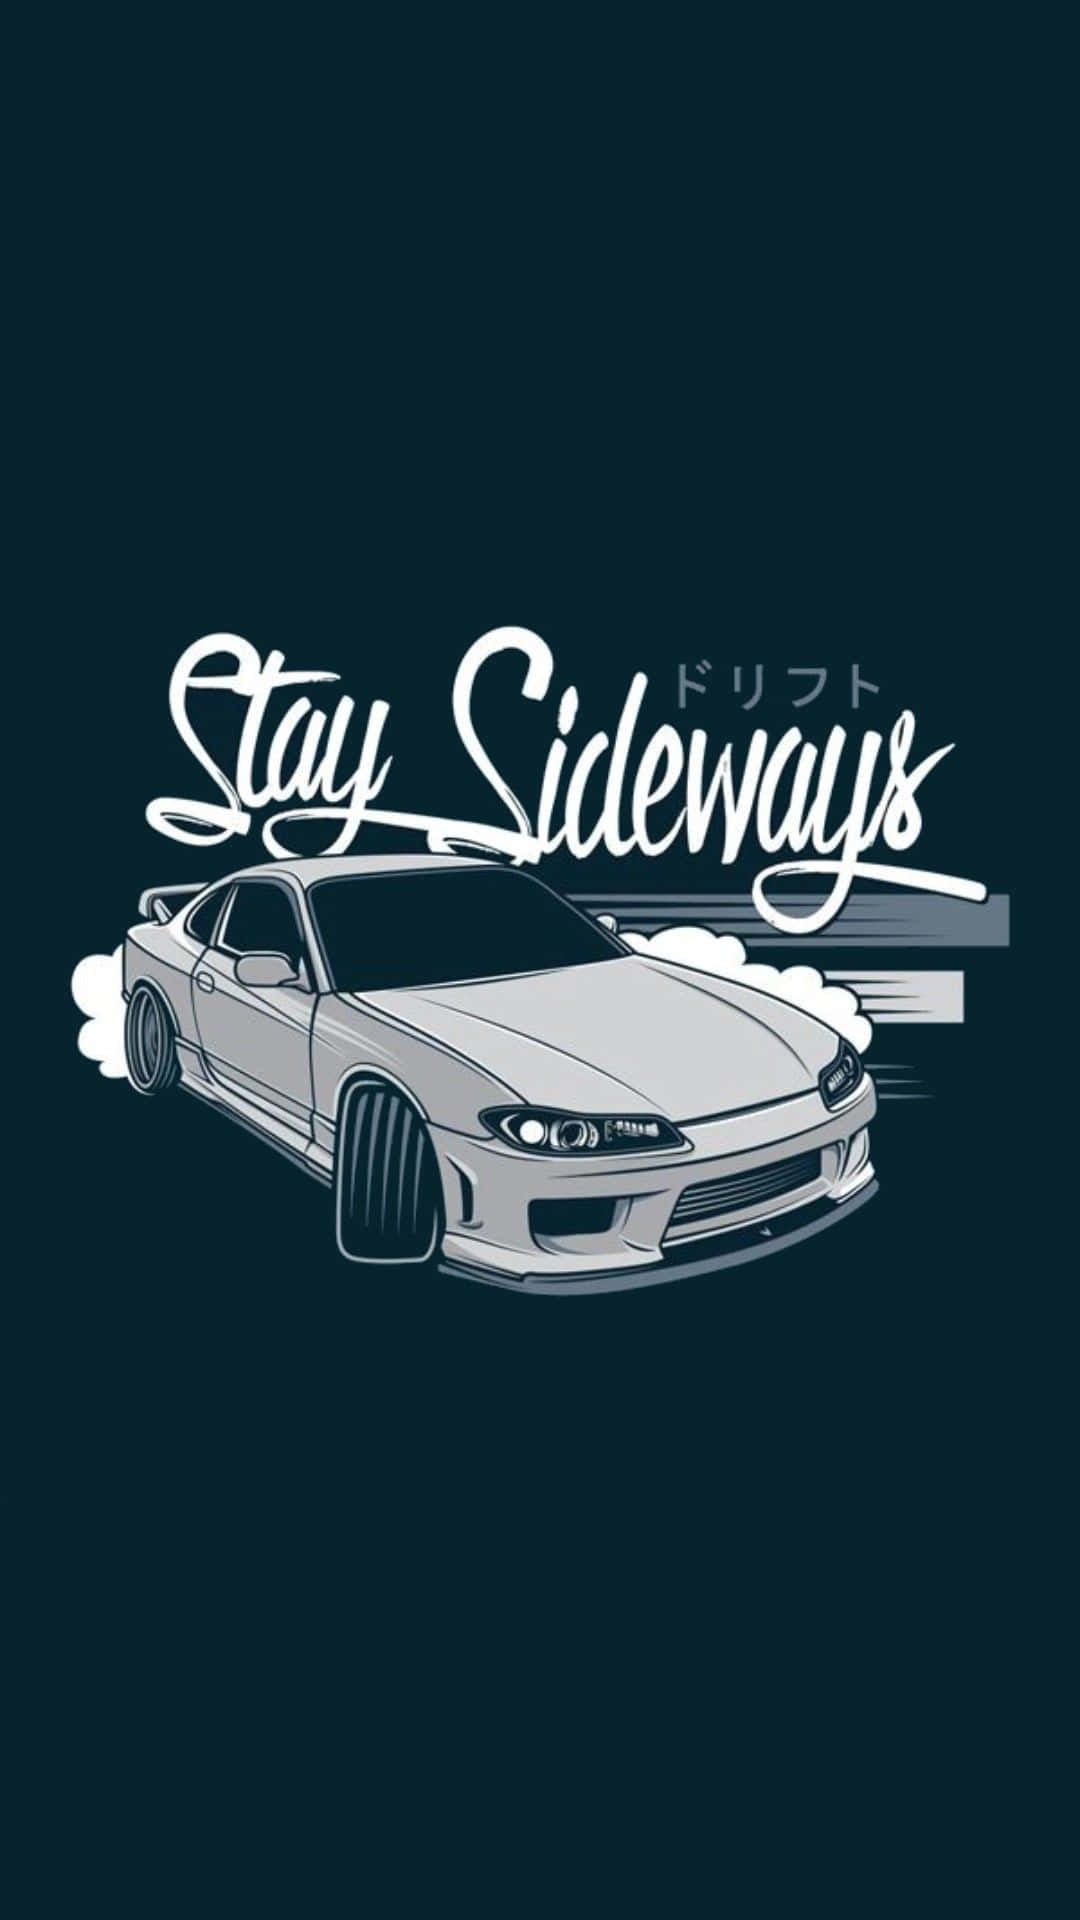 Stay Sideways Logo Wallpaper